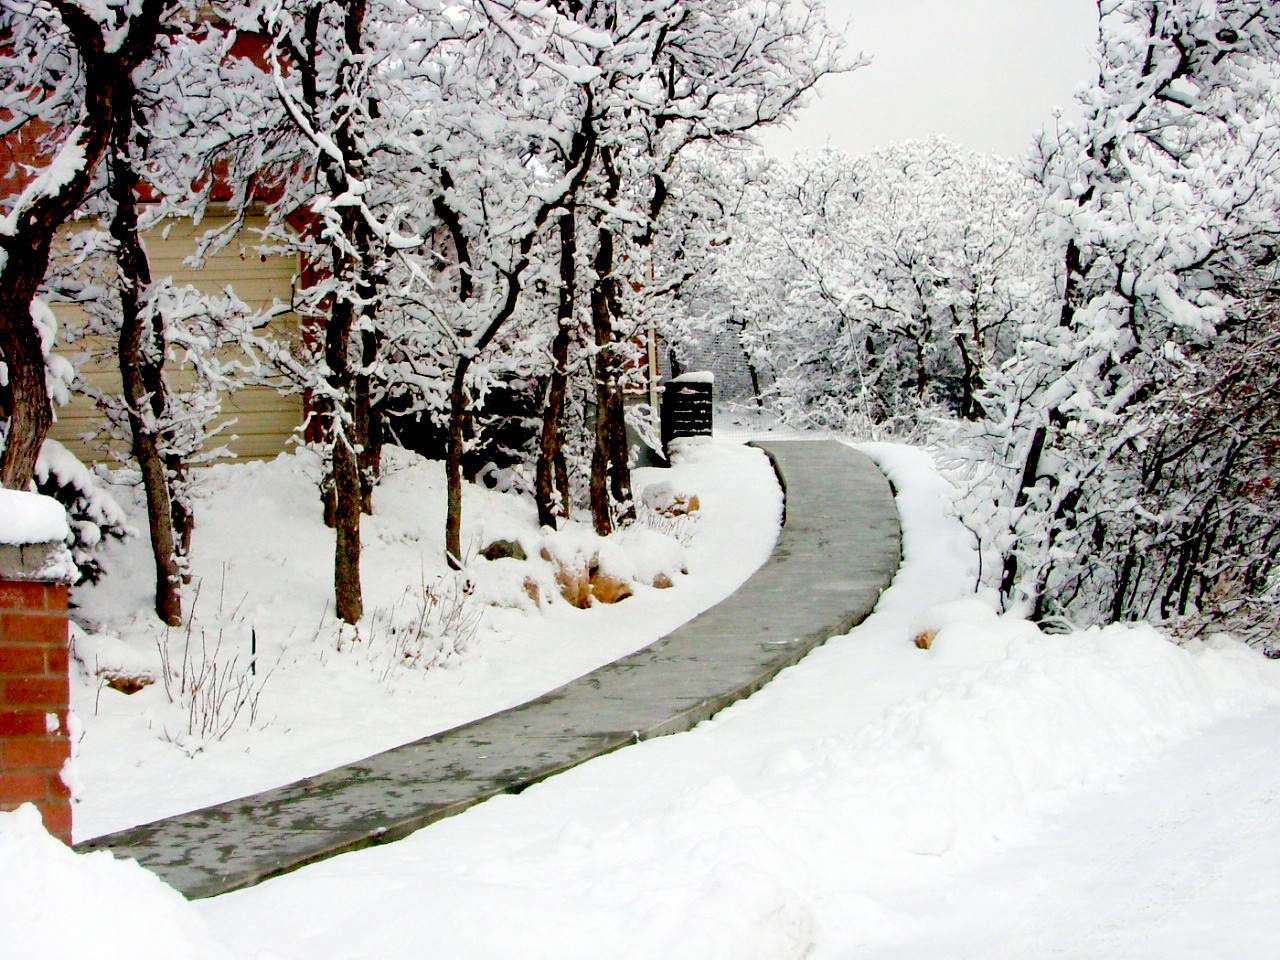 Дом снег Изображения – скачать бесплатно на Freepik